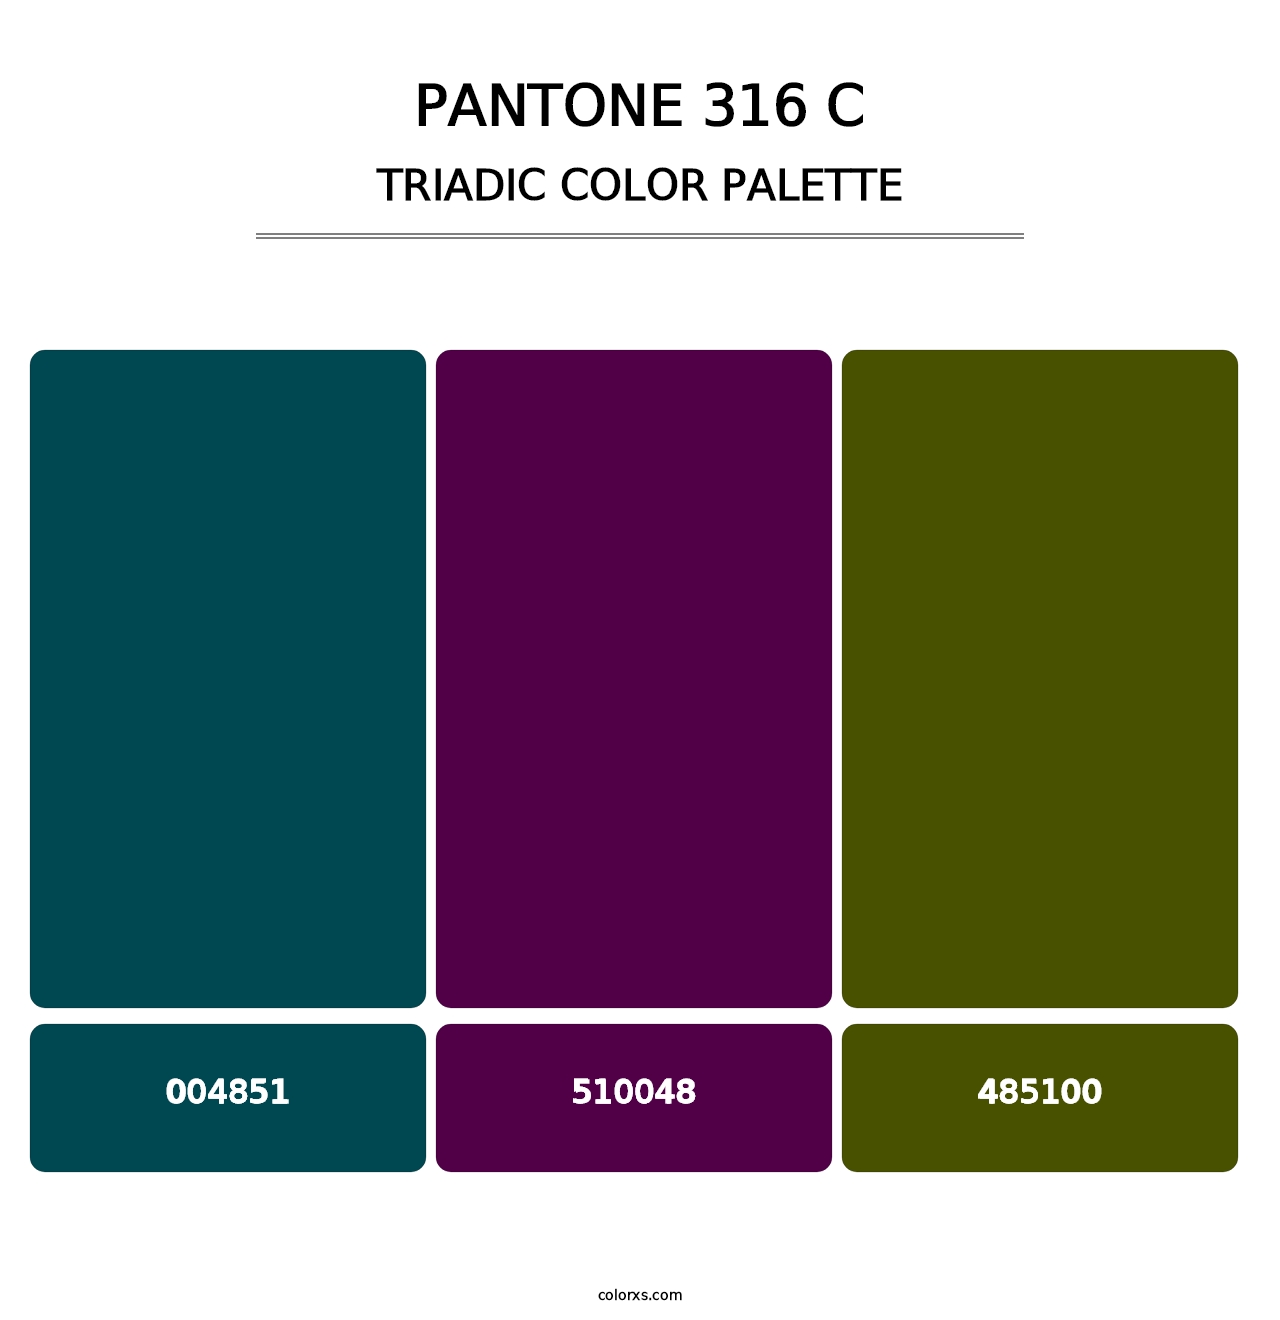 PANTONE 316 C - Triadic Color Palette